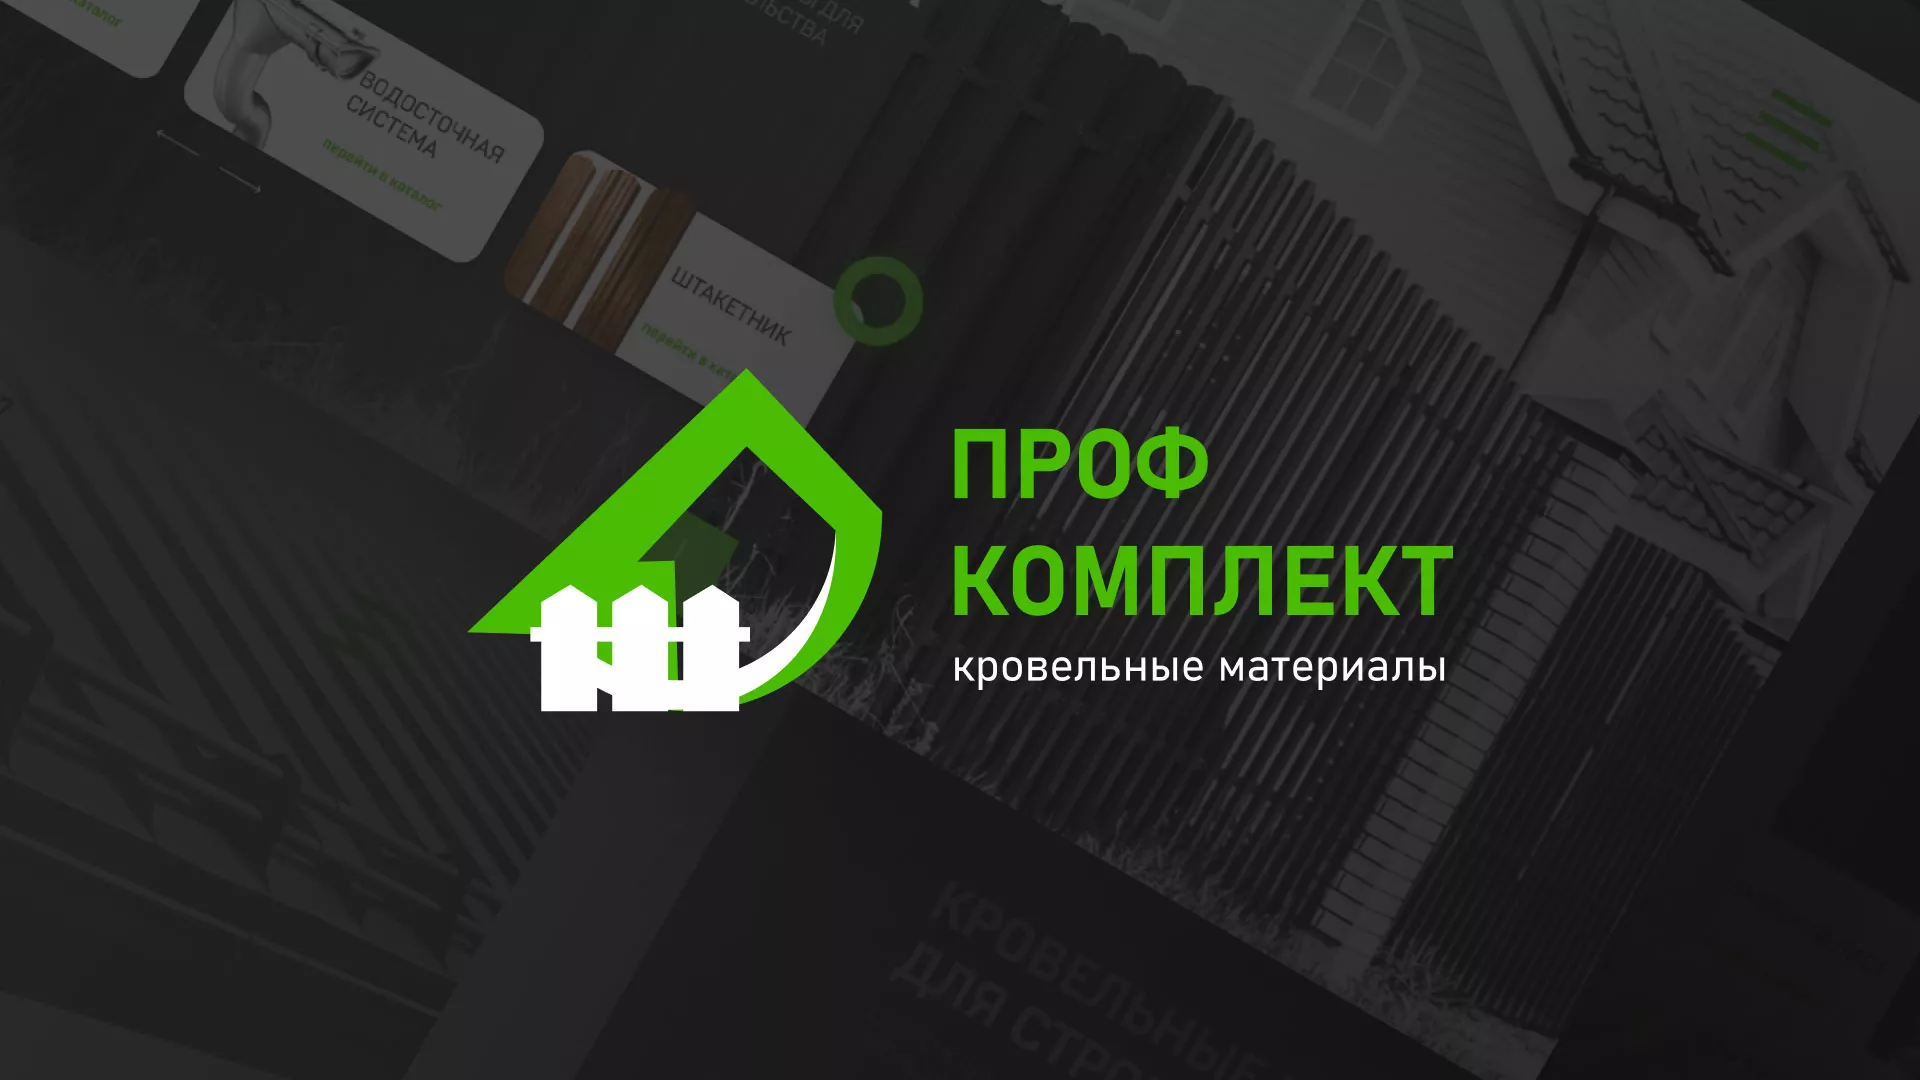 Создание сайта компании «Проф Комплект» в Мариинске